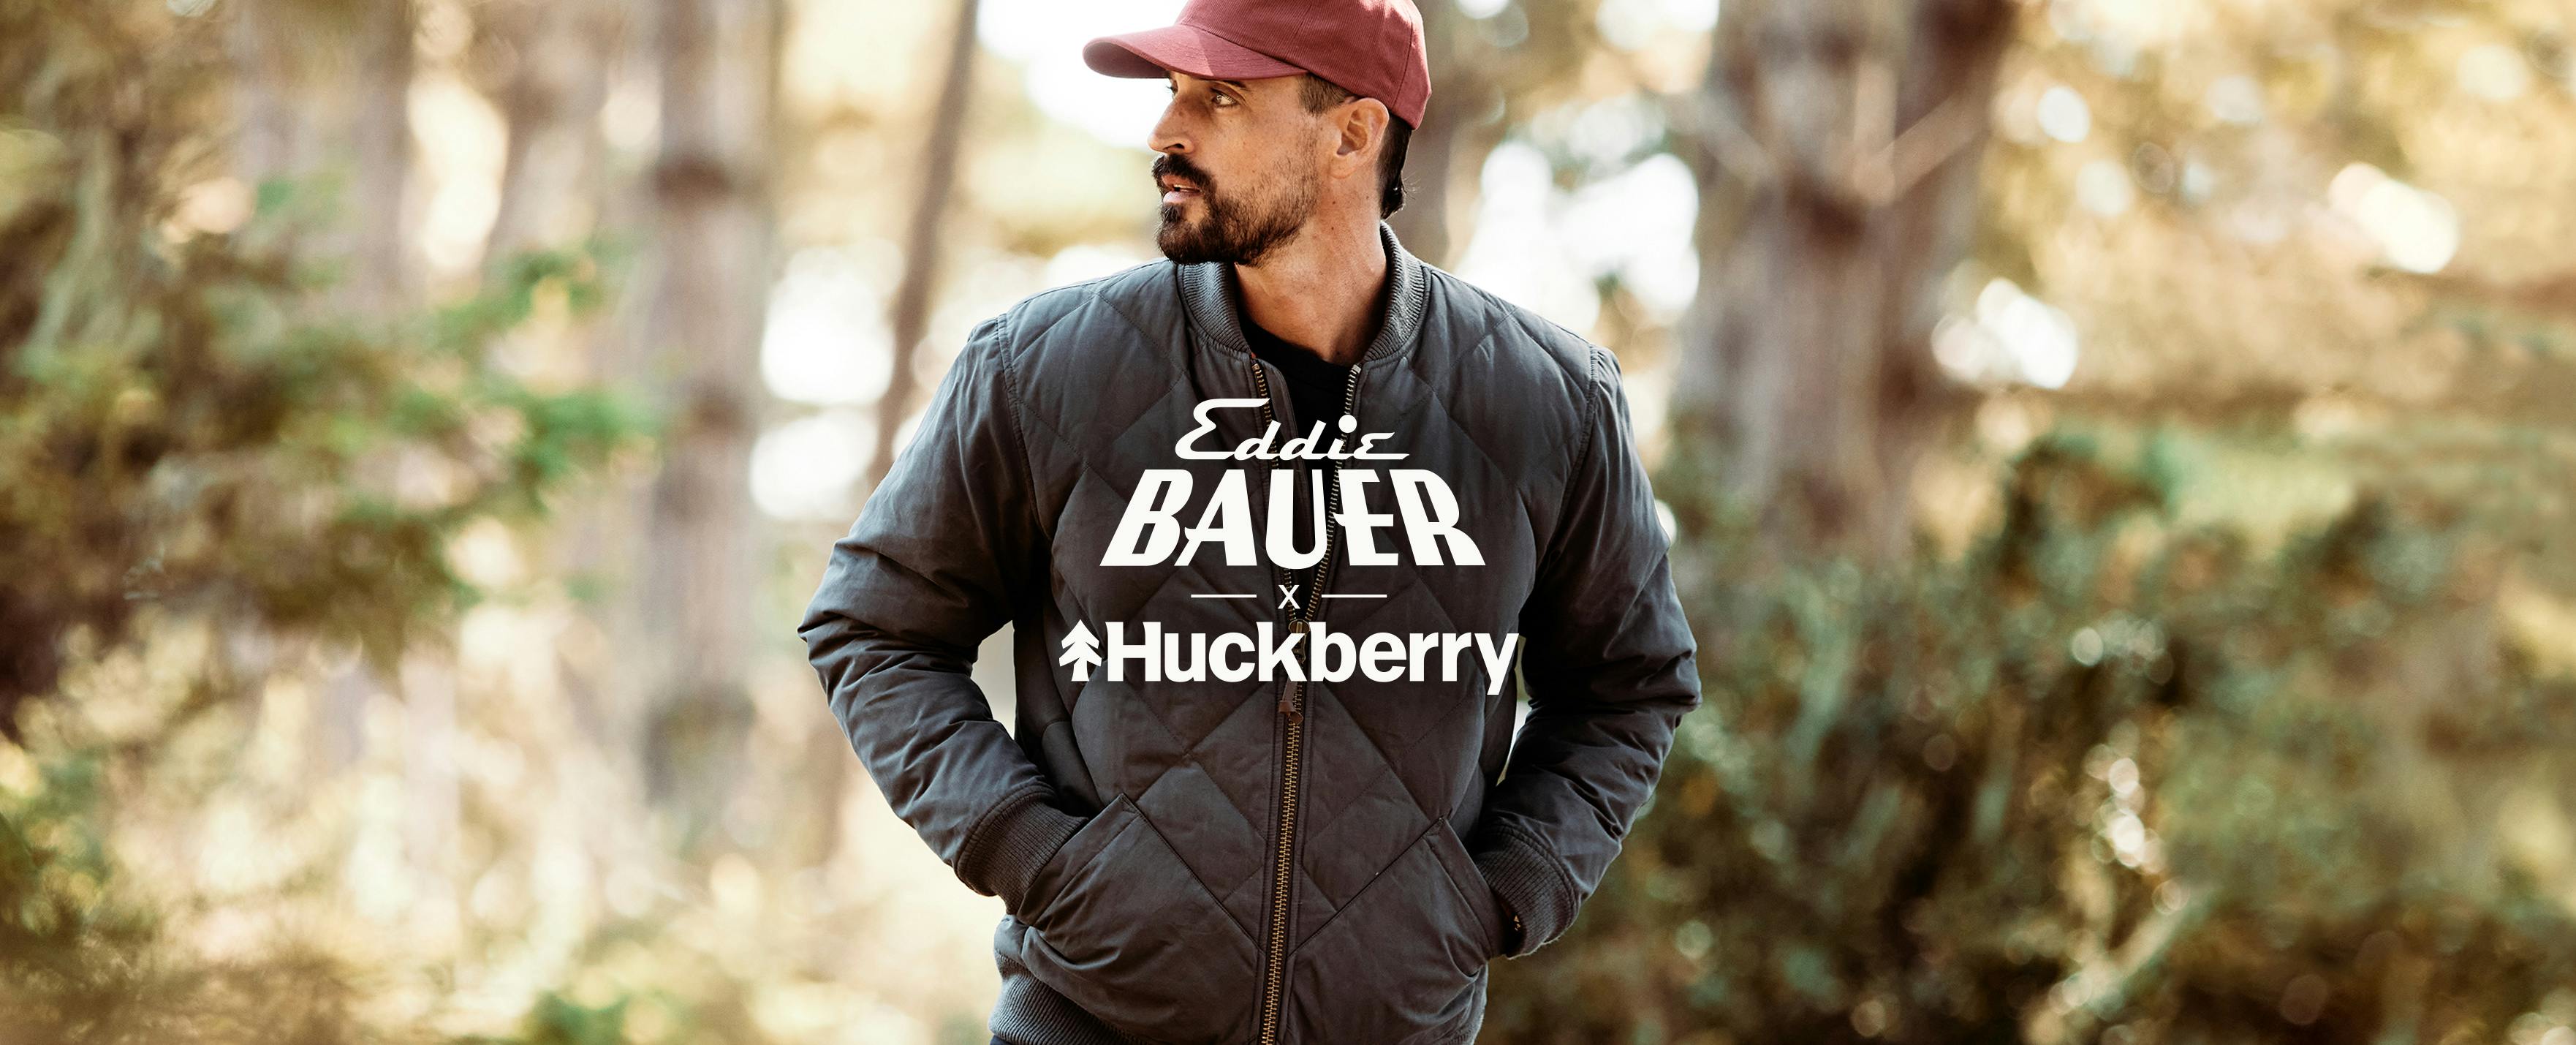 Shop Huckberry x Eddie Bauer